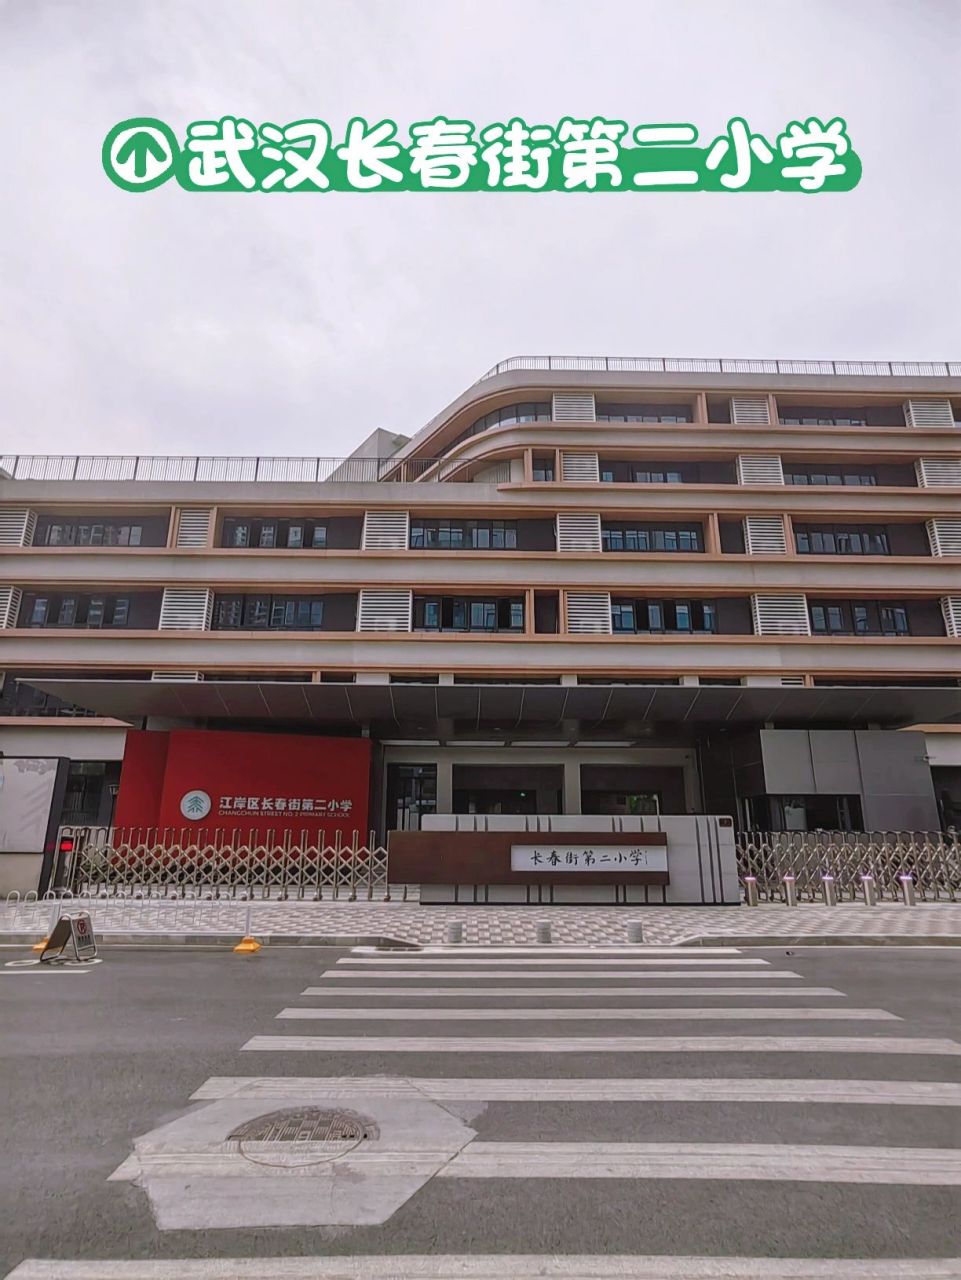 武汉的贵族学校～长春街第二小学系列 江岸区长春街第二小学,位于二七